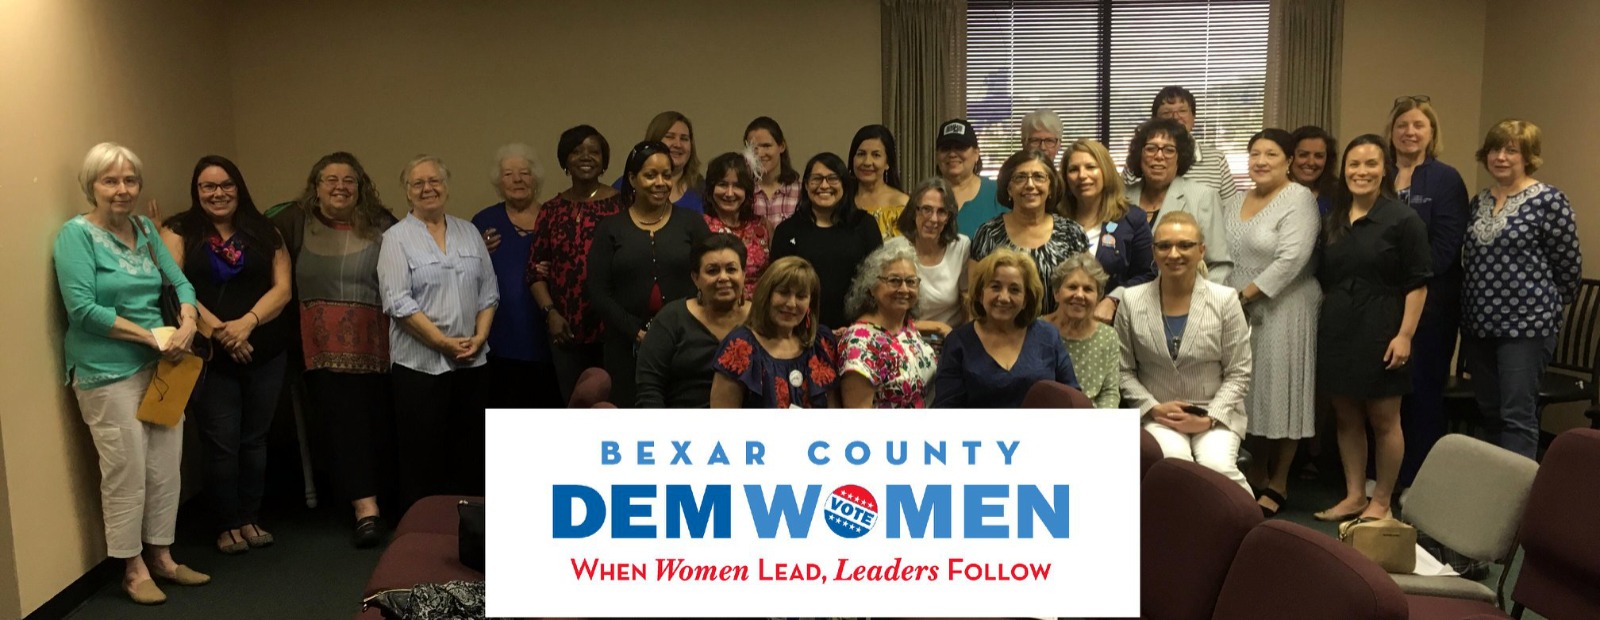 Bexar County Democratic Women